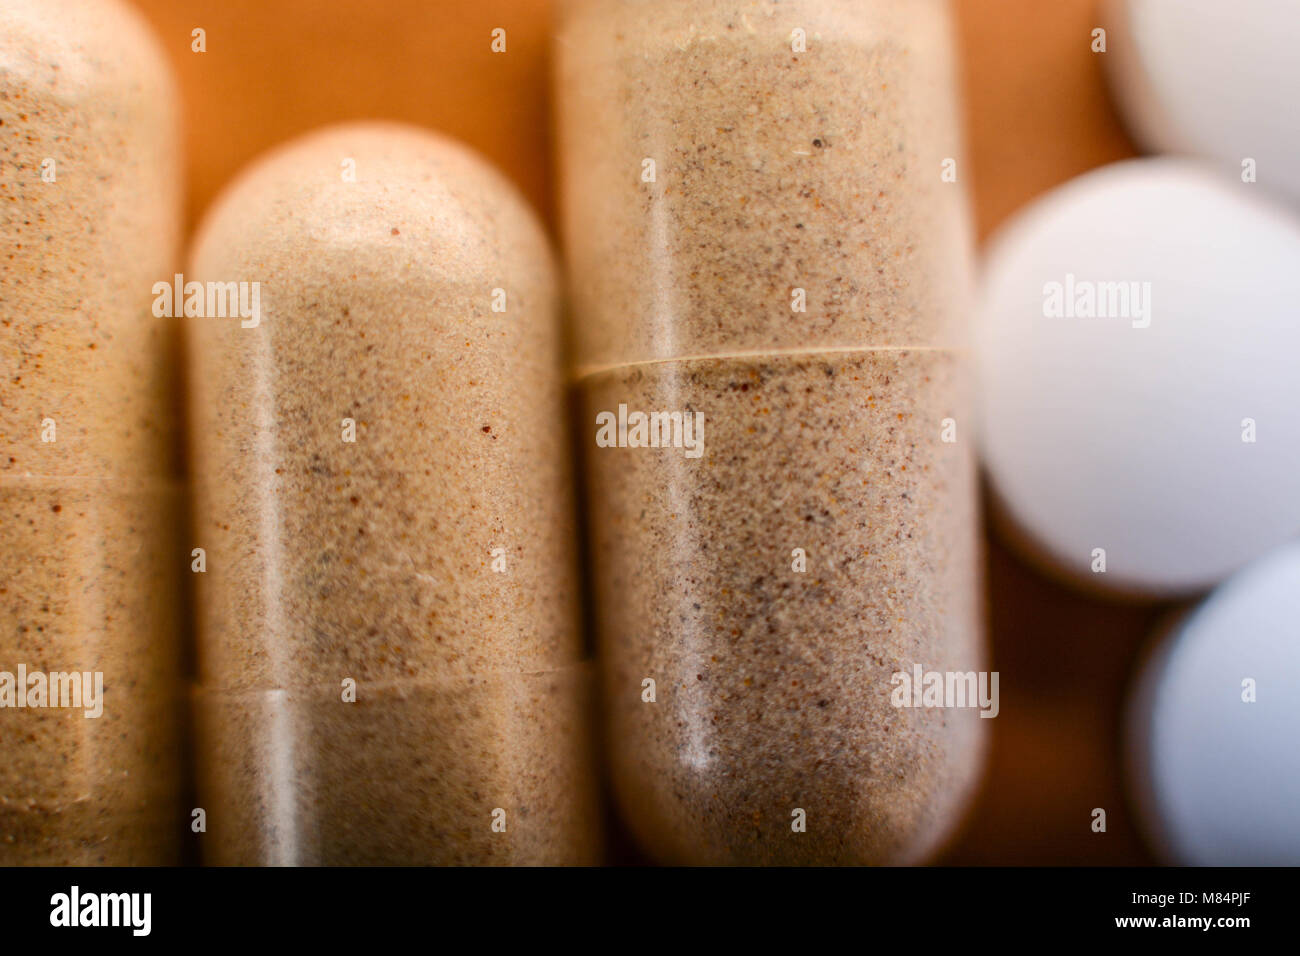 Los suplementos de vitaminas y minerales, Dieta saludable concepto Foto de stock